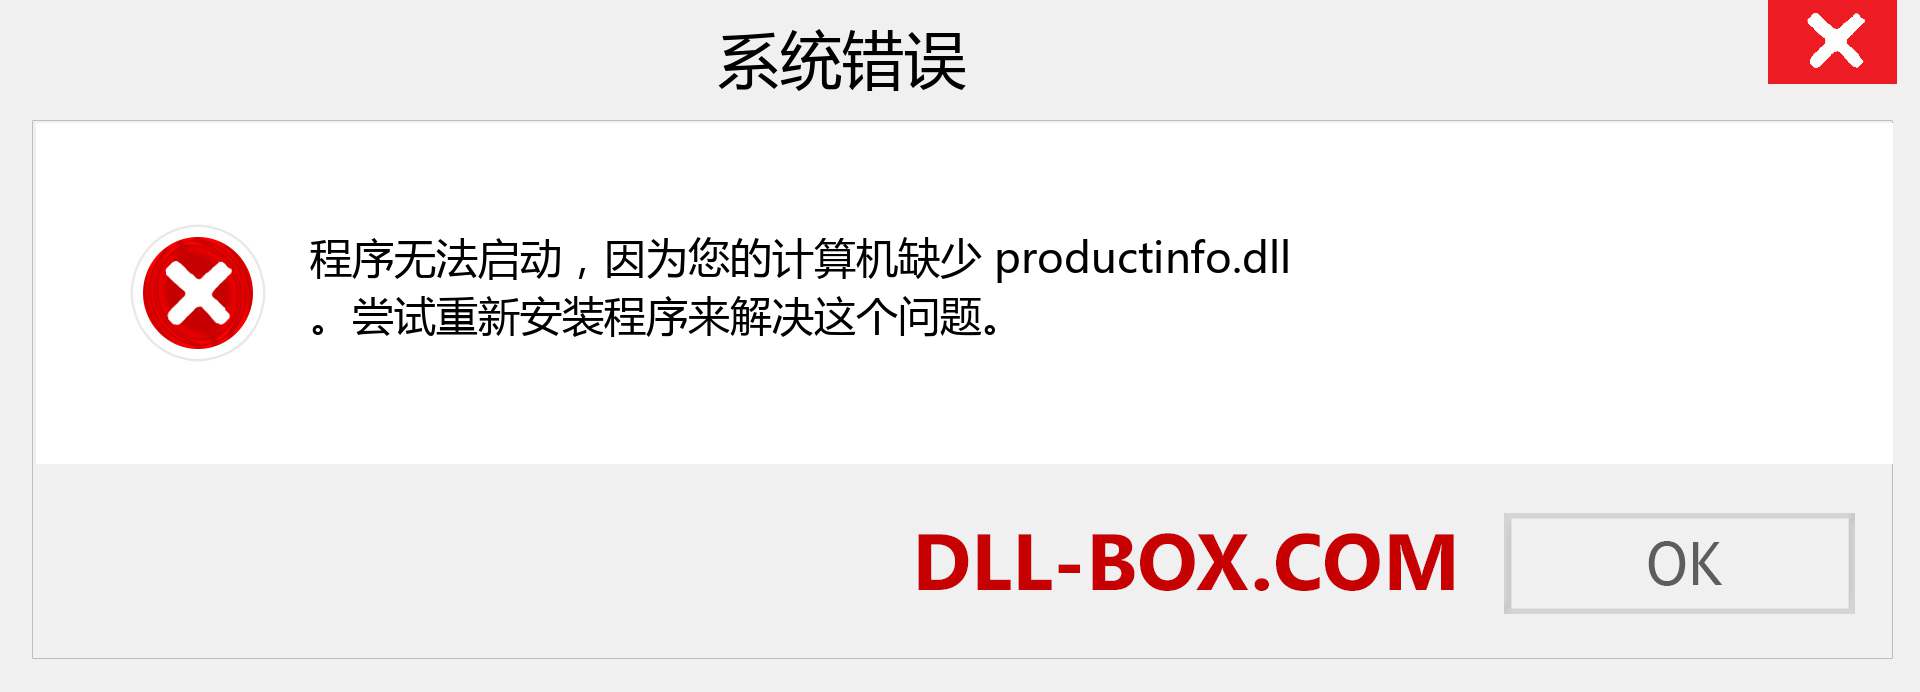 productinfo.dll 文件丢失？。 适用于 Windows 7、8、10 的下载 - 修复 Windows、照片、图像上的 productinfo dll 丢失错误